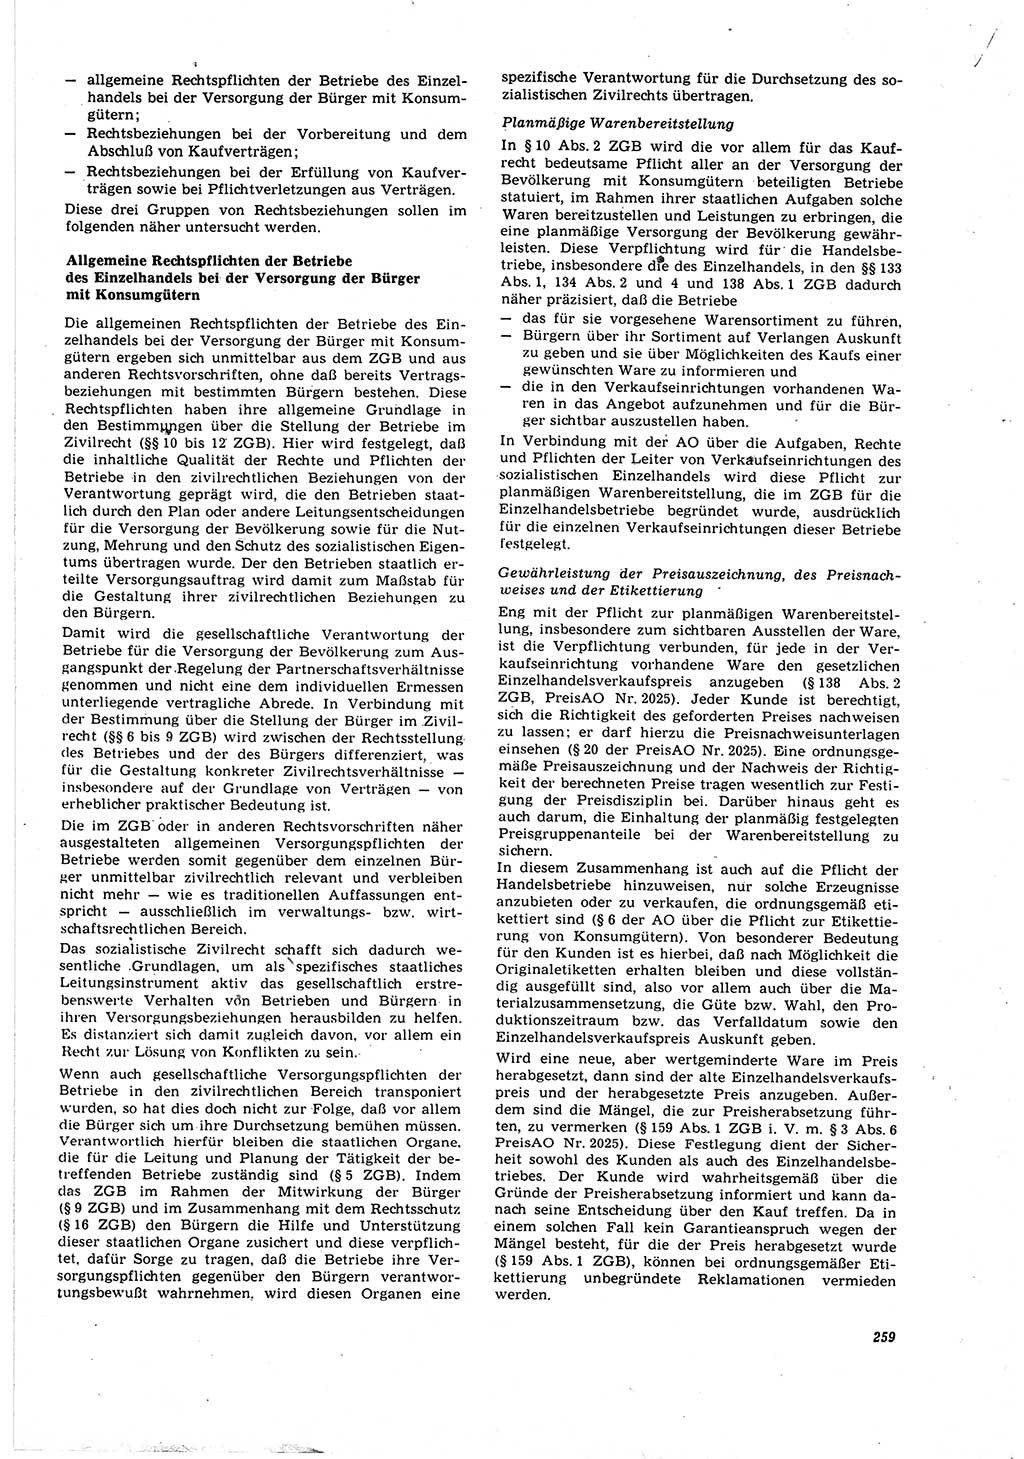 Neue Justiz (NJ), Zeitschrift für Recht und Rechtswissenschaft [Deutsche Demokratische Republik (DDR)], 30. Jahrgang 1976, Seite 259 (NJ DDR 1976, S. 259)